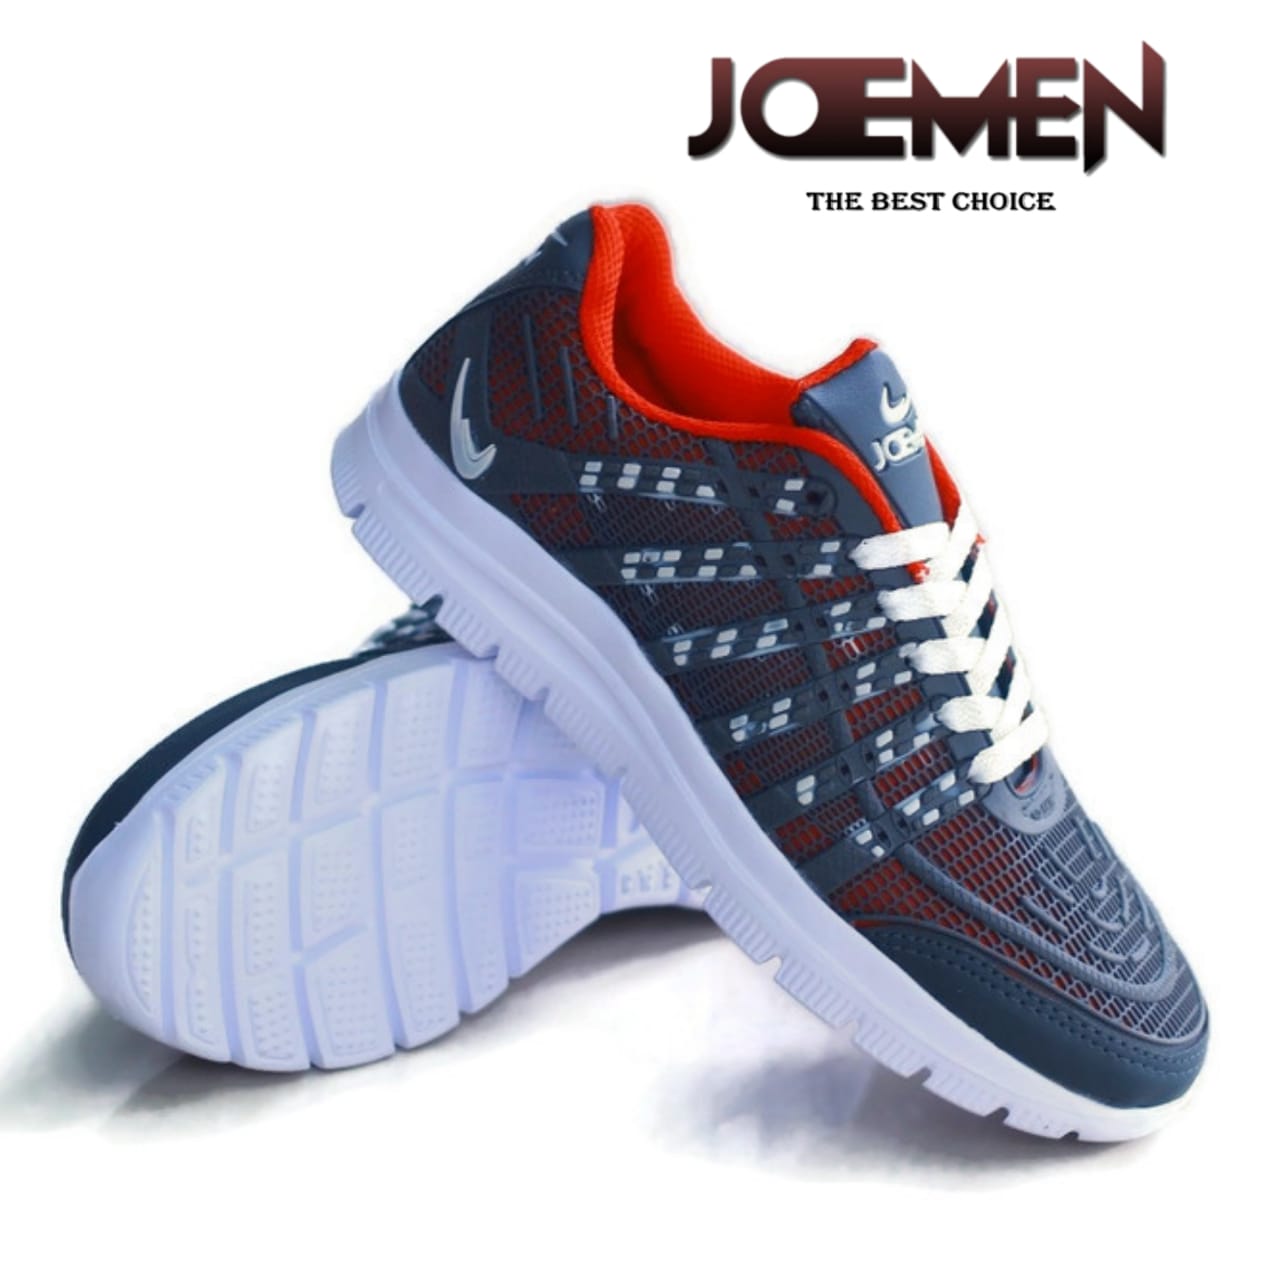 Sepatu JOEMEN J 76 NEW / IMPORT QUALITY Lari Sneakers Jogging Running Cowok Cewek